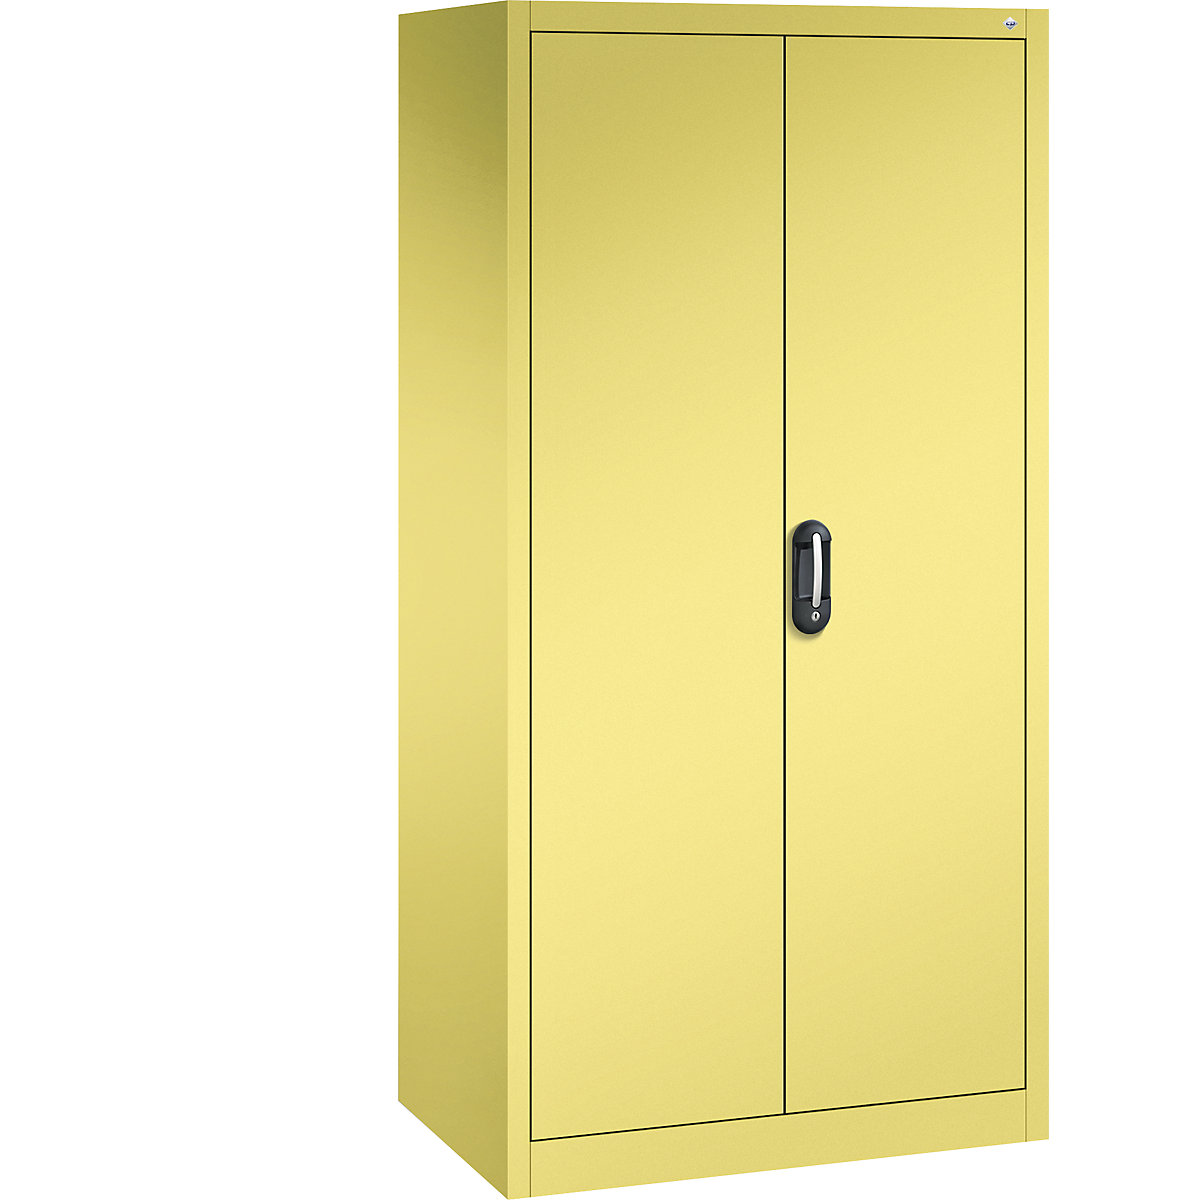 Univerzální skříň ACURADO – C+P, š x h 930 x 600 mm, sírová žlutá / sírová žlutá-17